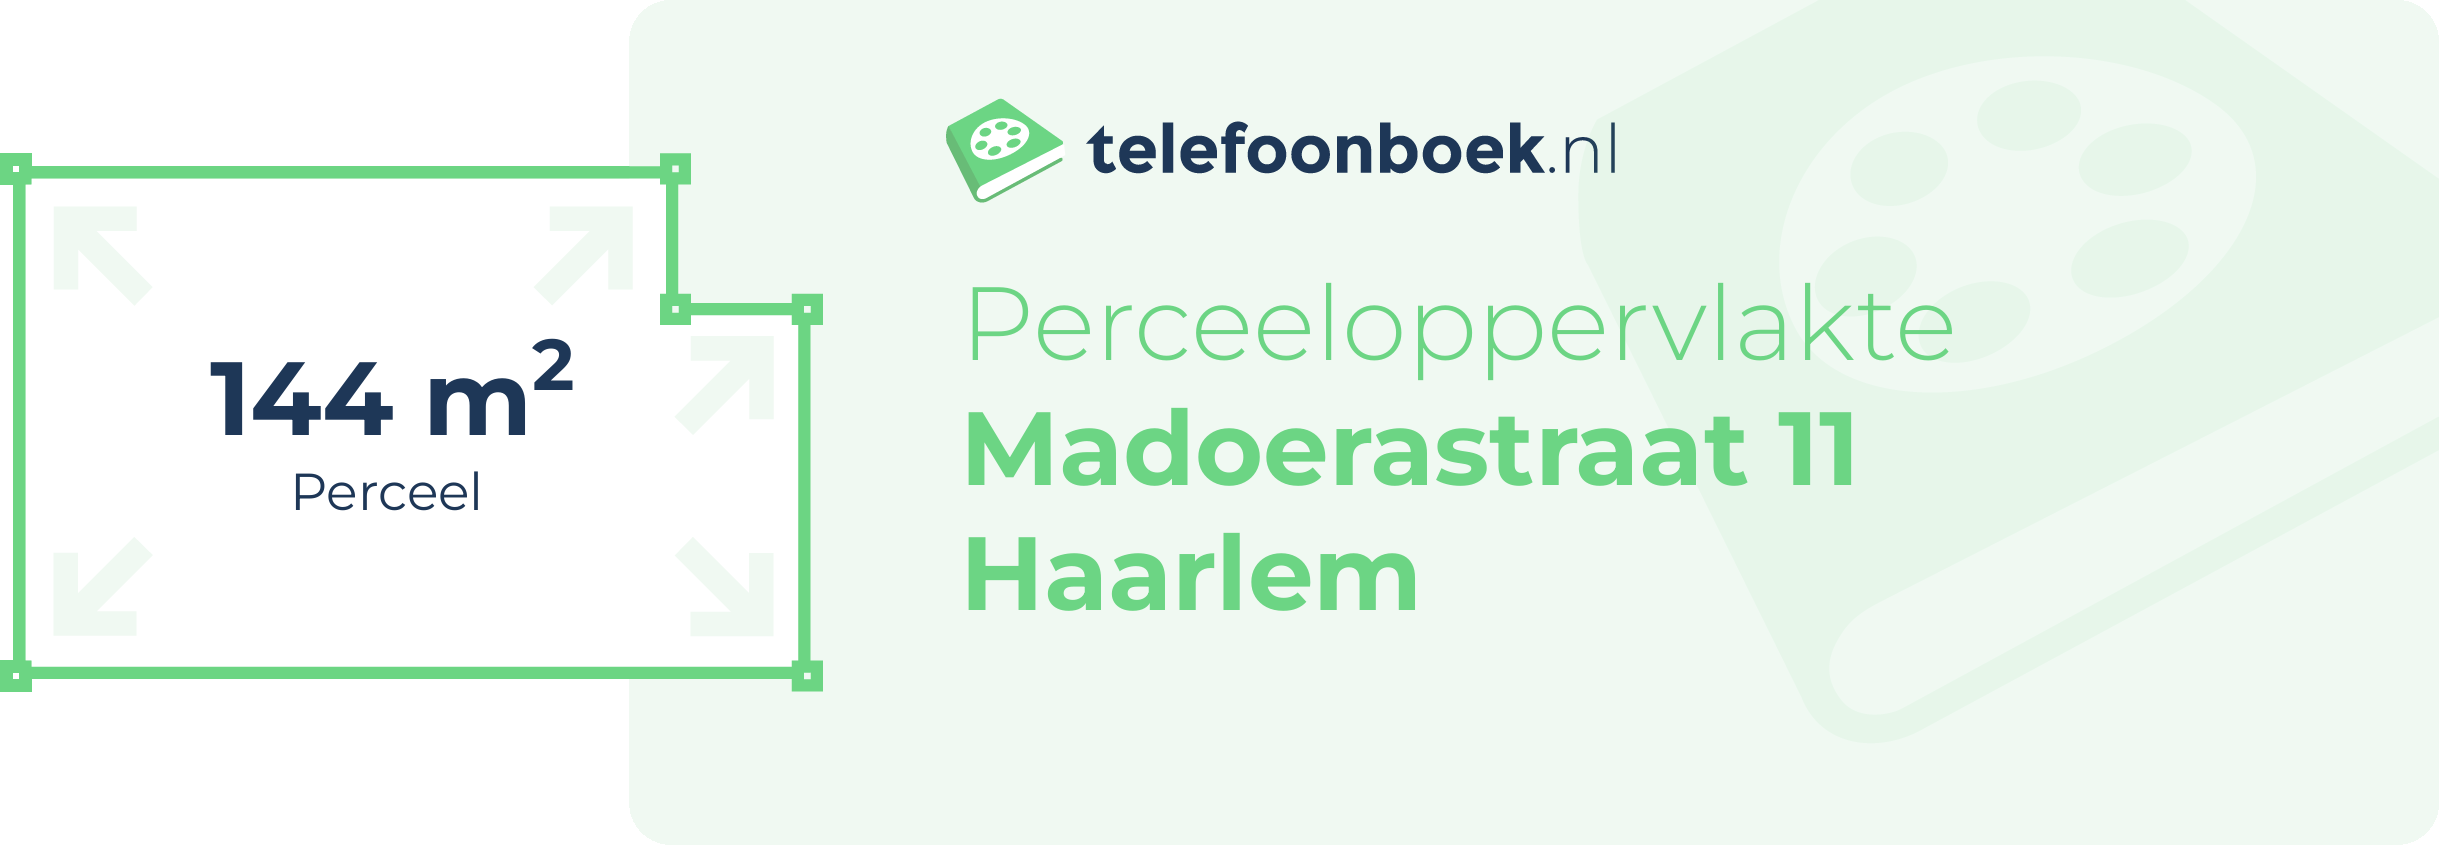 Perceeloppervlakte Madoerastraat 11 Haarlem